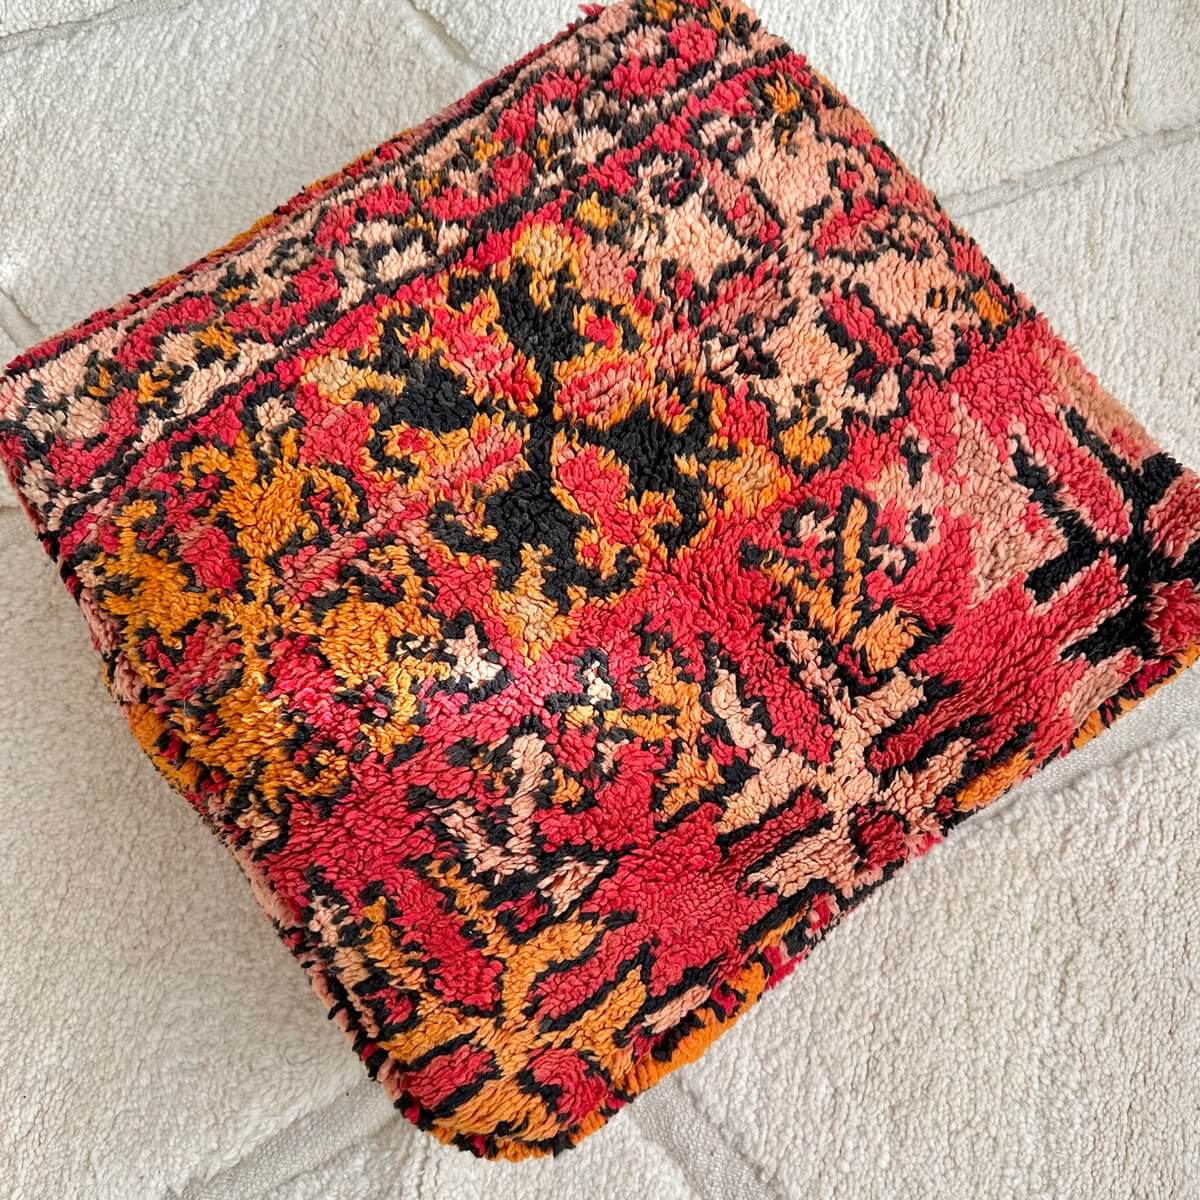 perna de podea marocana creata dintr-un covor pufos din lana vintage